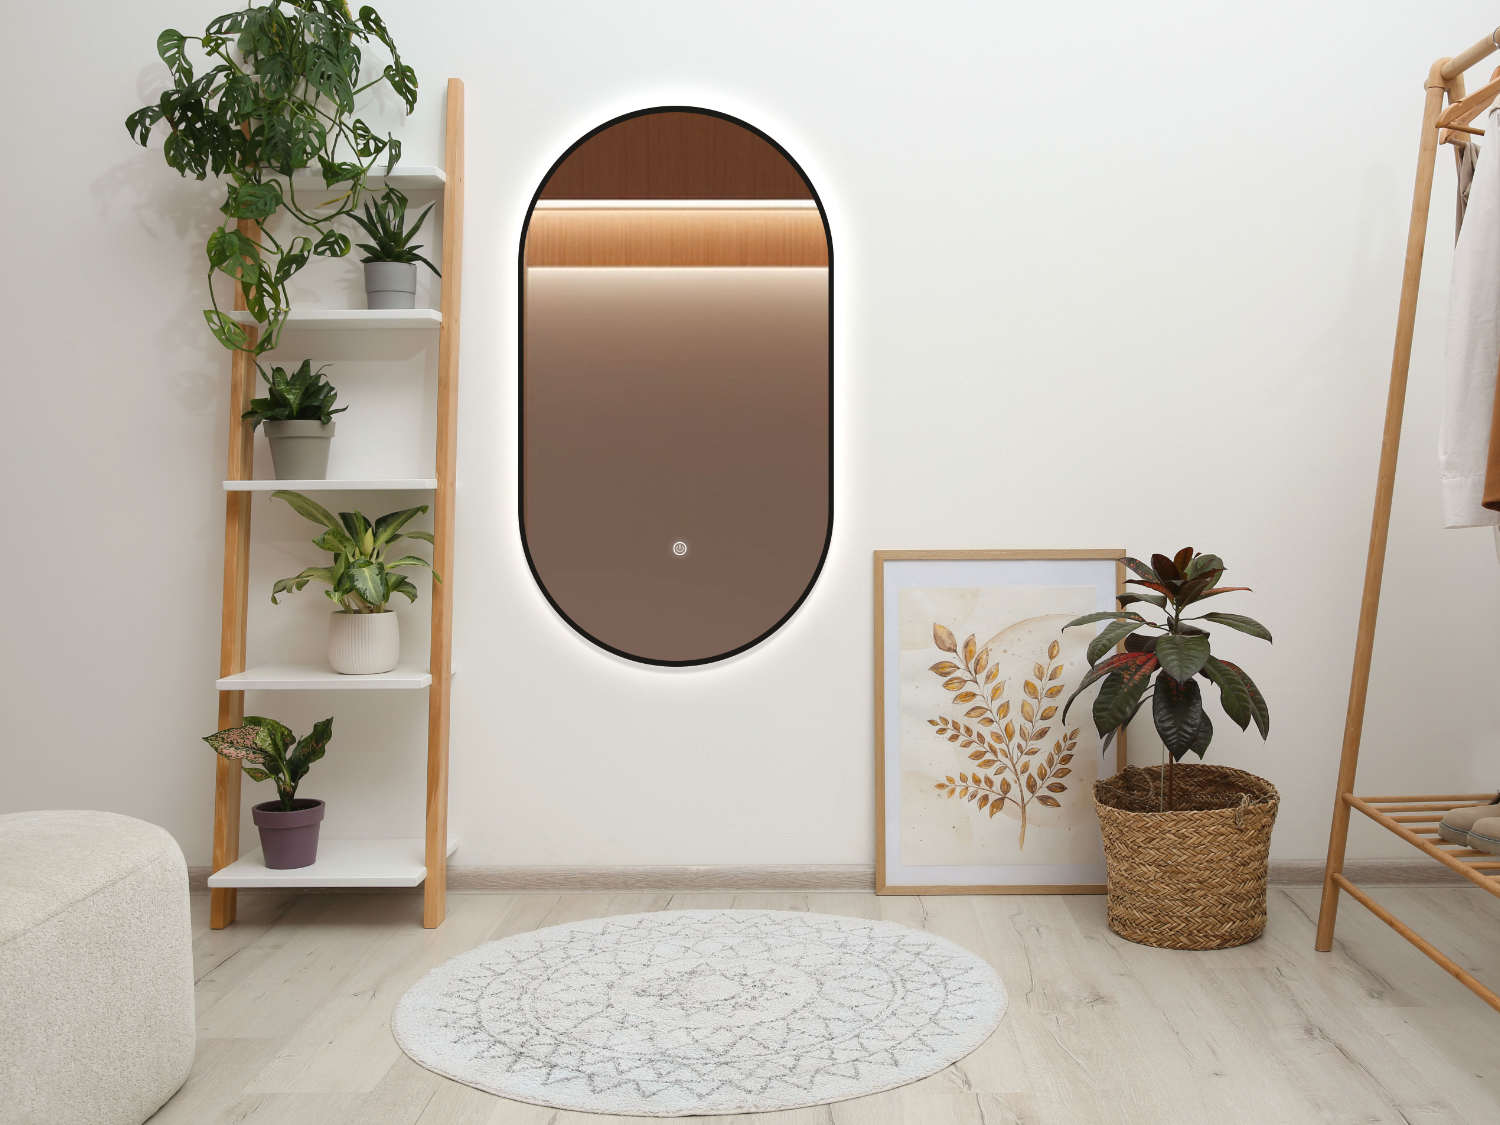 LED Badspiegel, design Badspiegel, Badspiegel mit led Beleuchtung